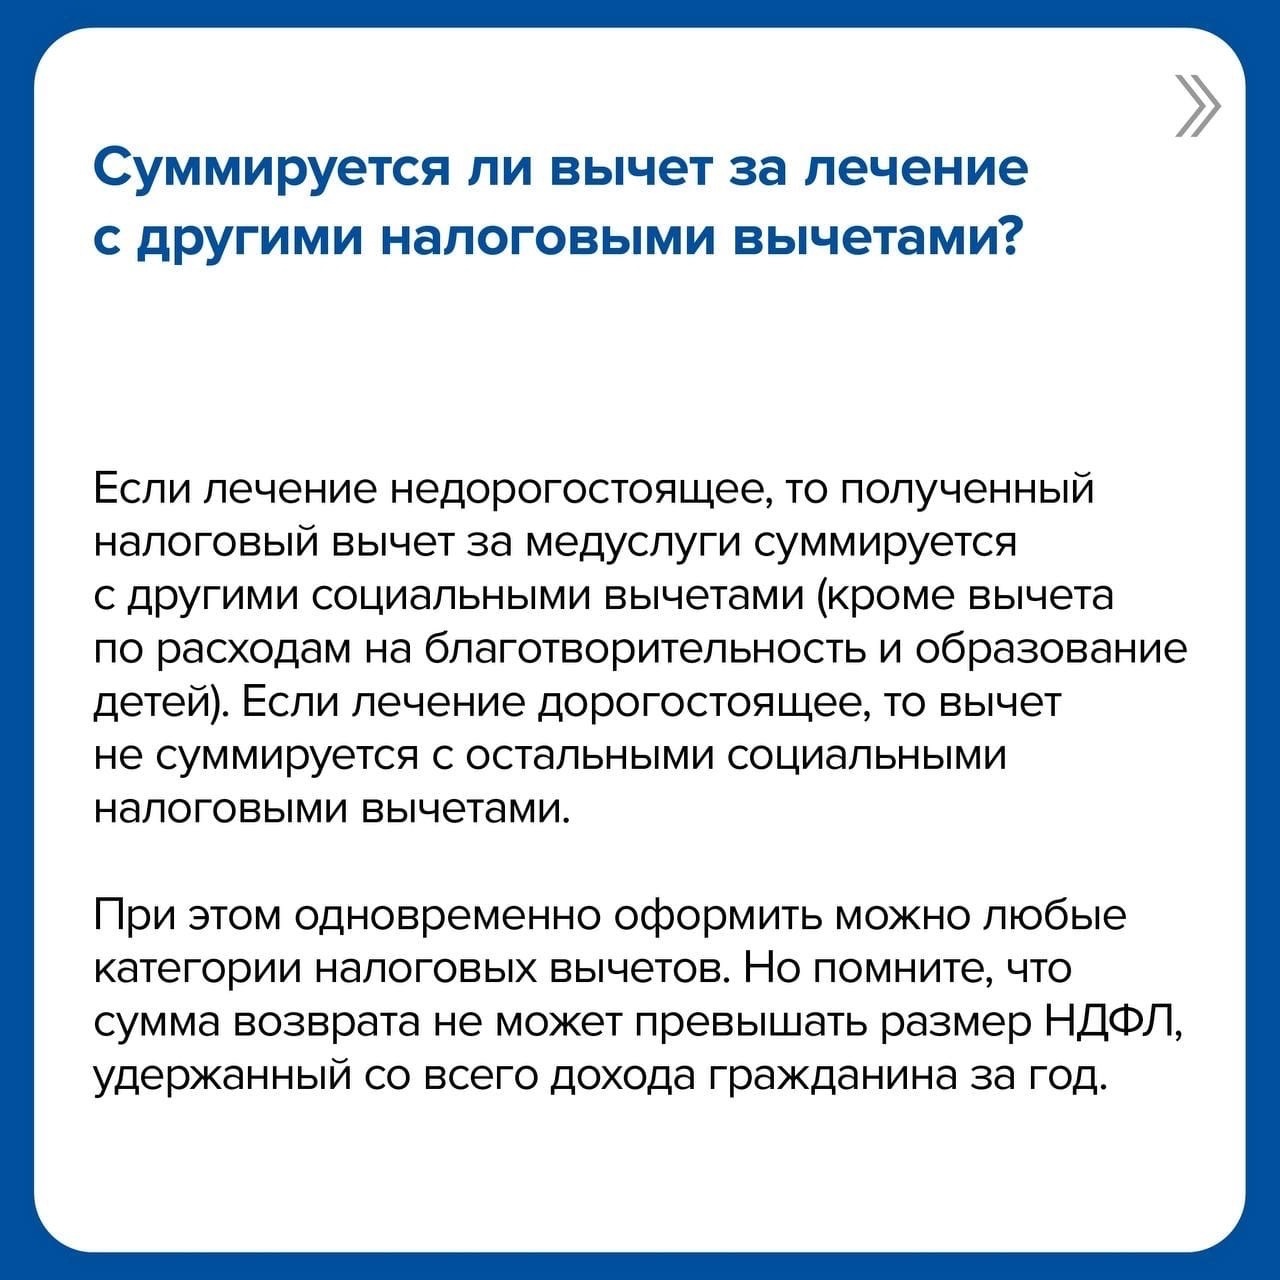 Жители Башкортостана могут получить налоговый вычет за лечение.